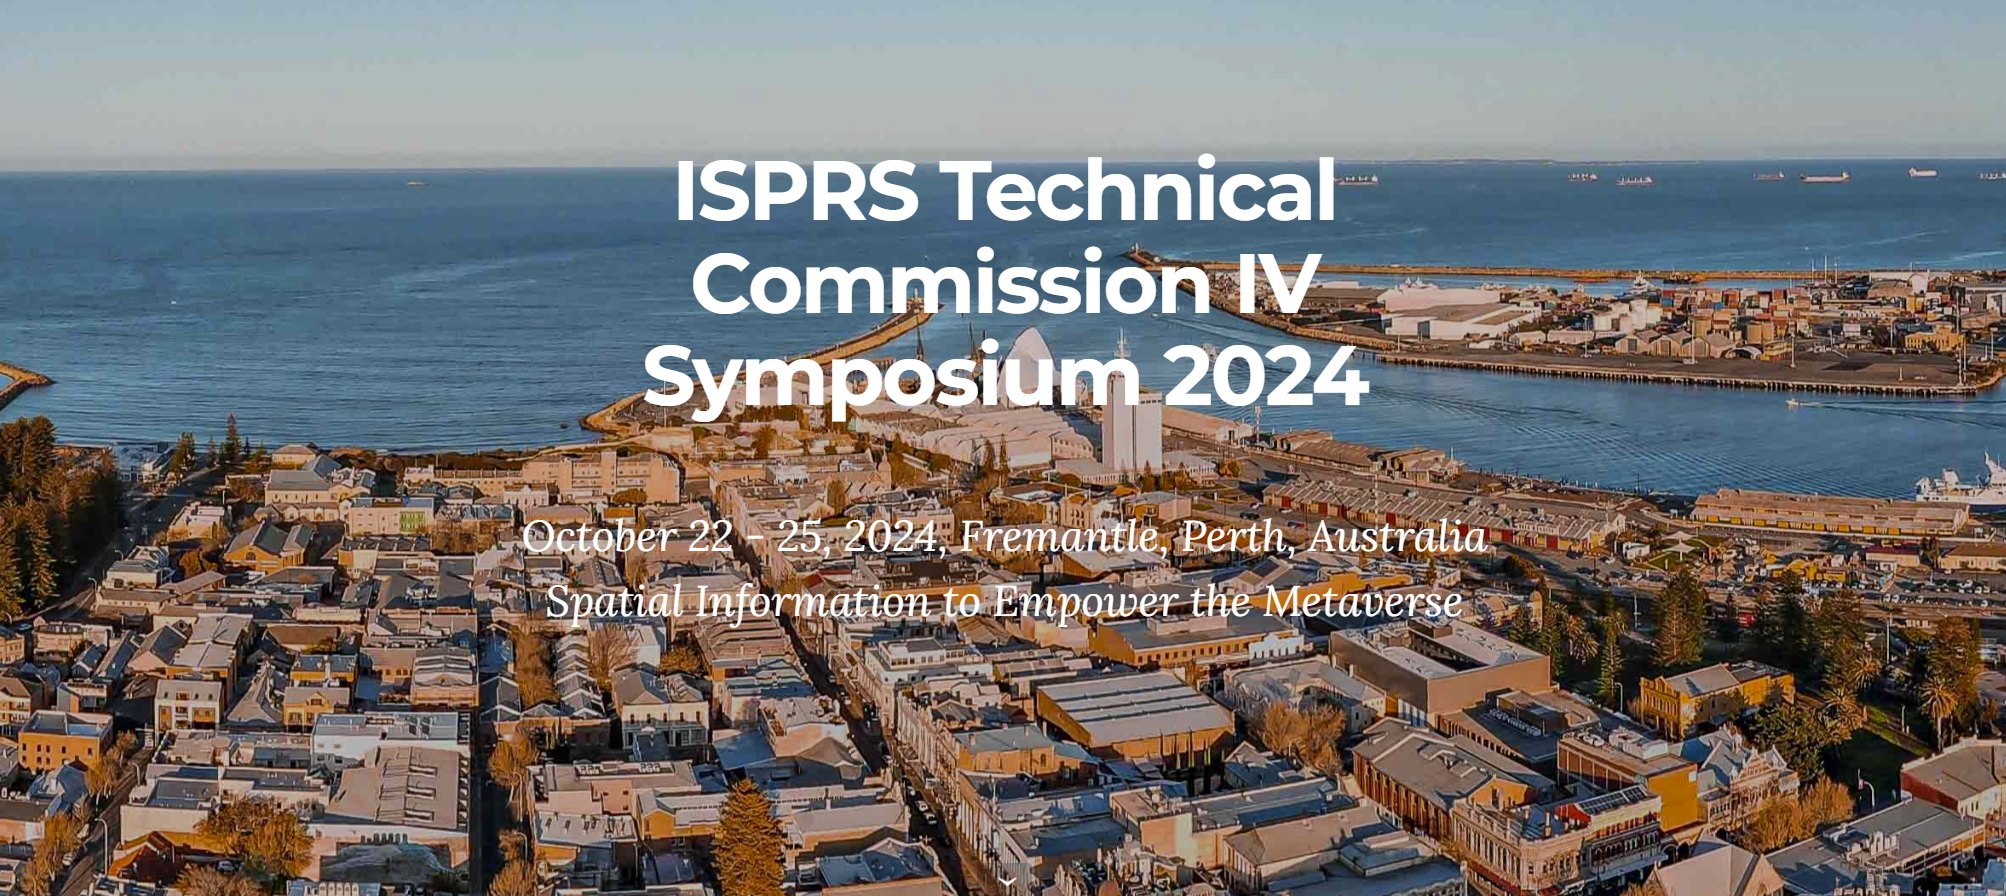 ISPRS TC IV midterm symposium website